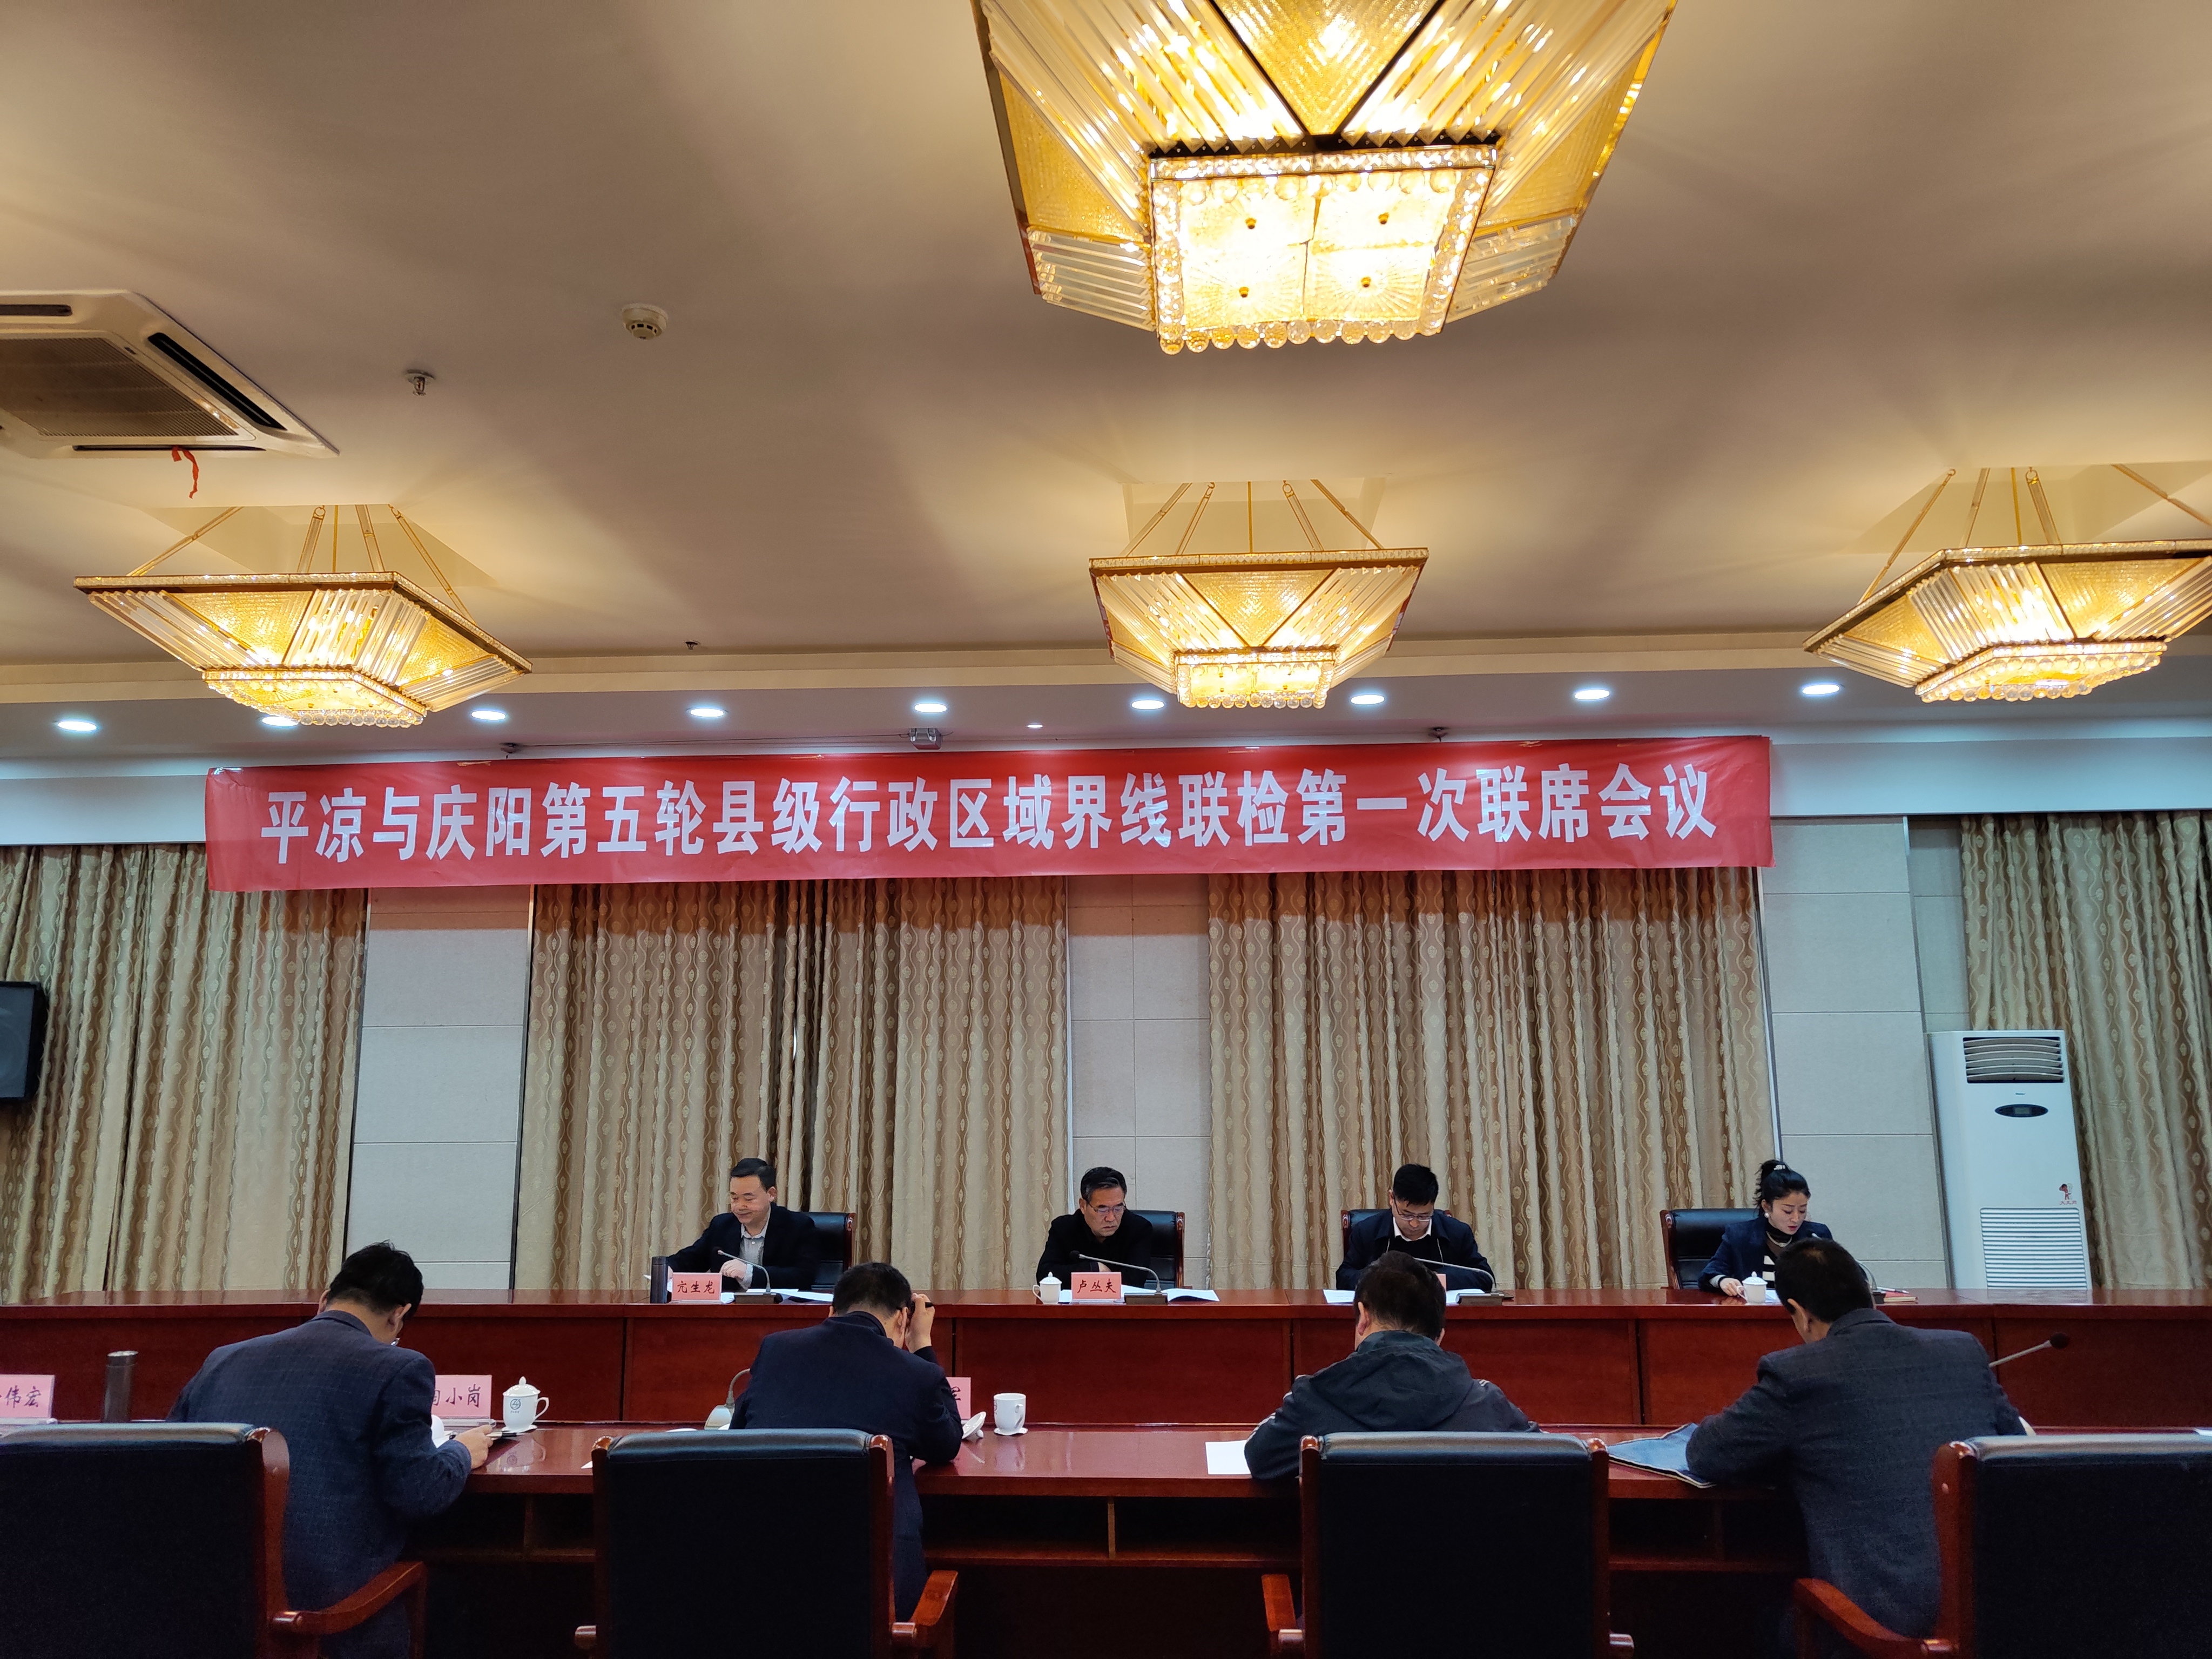 平凉与庆阳第五轮县级行政区域界线联合
检查工作全面启动